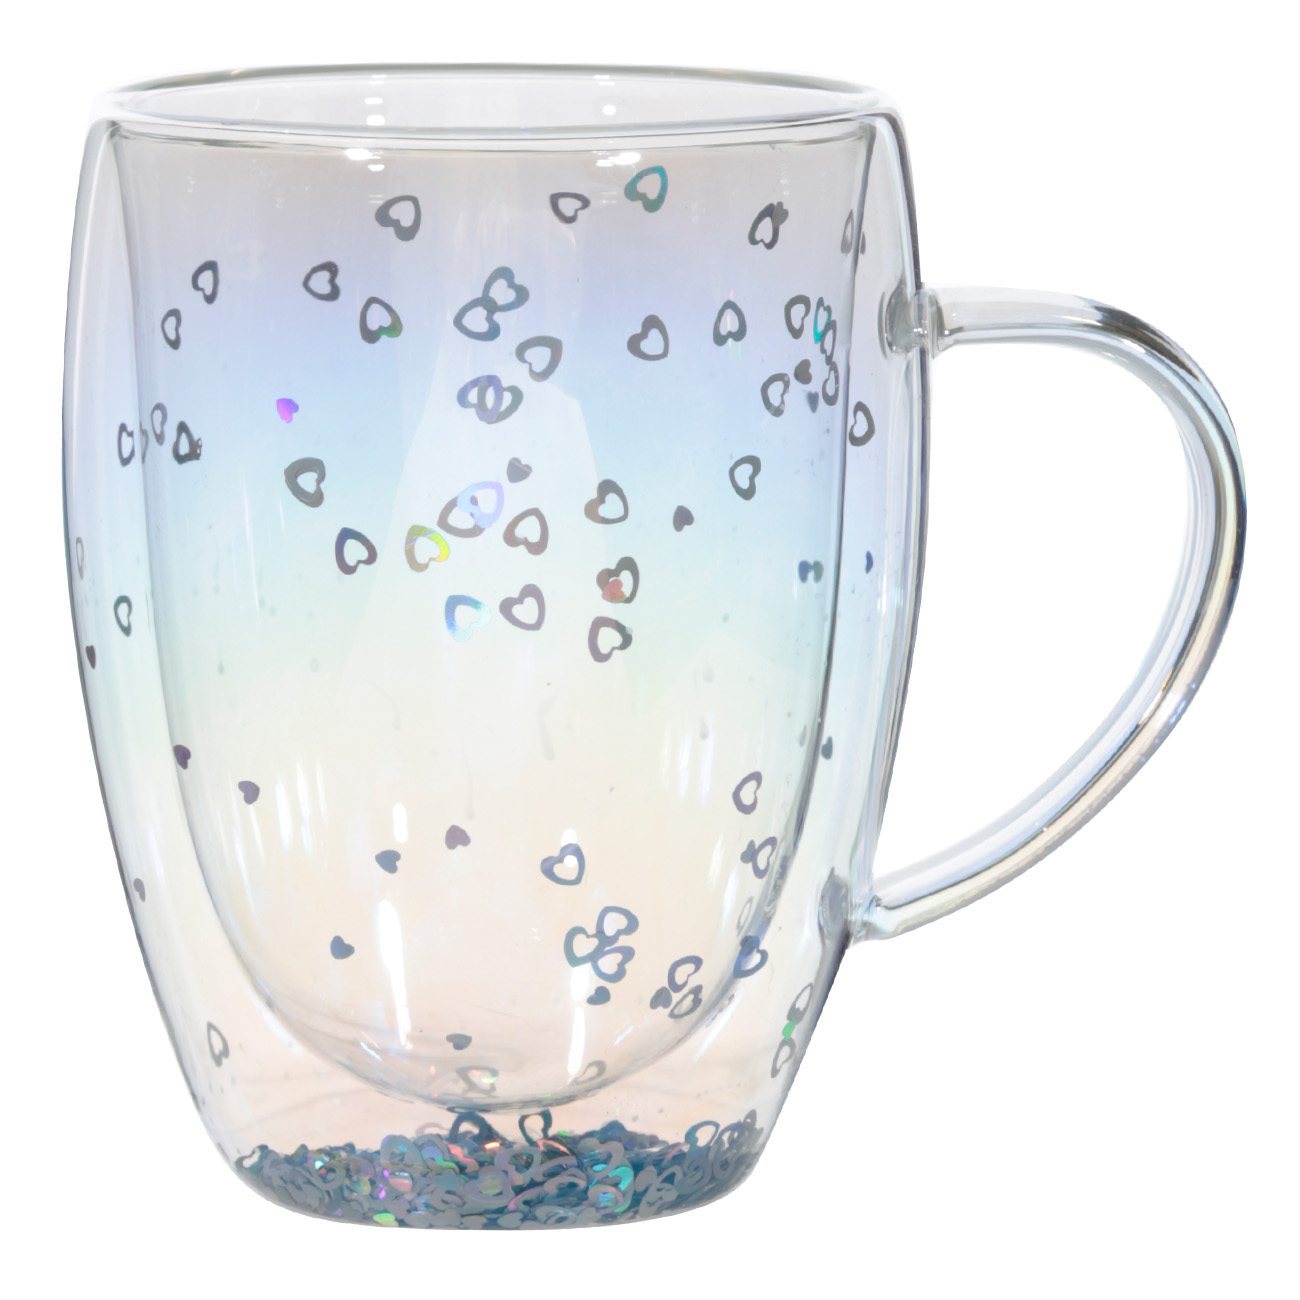 Кружка, 330 мл, 2 шт, стекло Б, перламутр, с серебристыми сердечками, Air sparkly изображение № 2